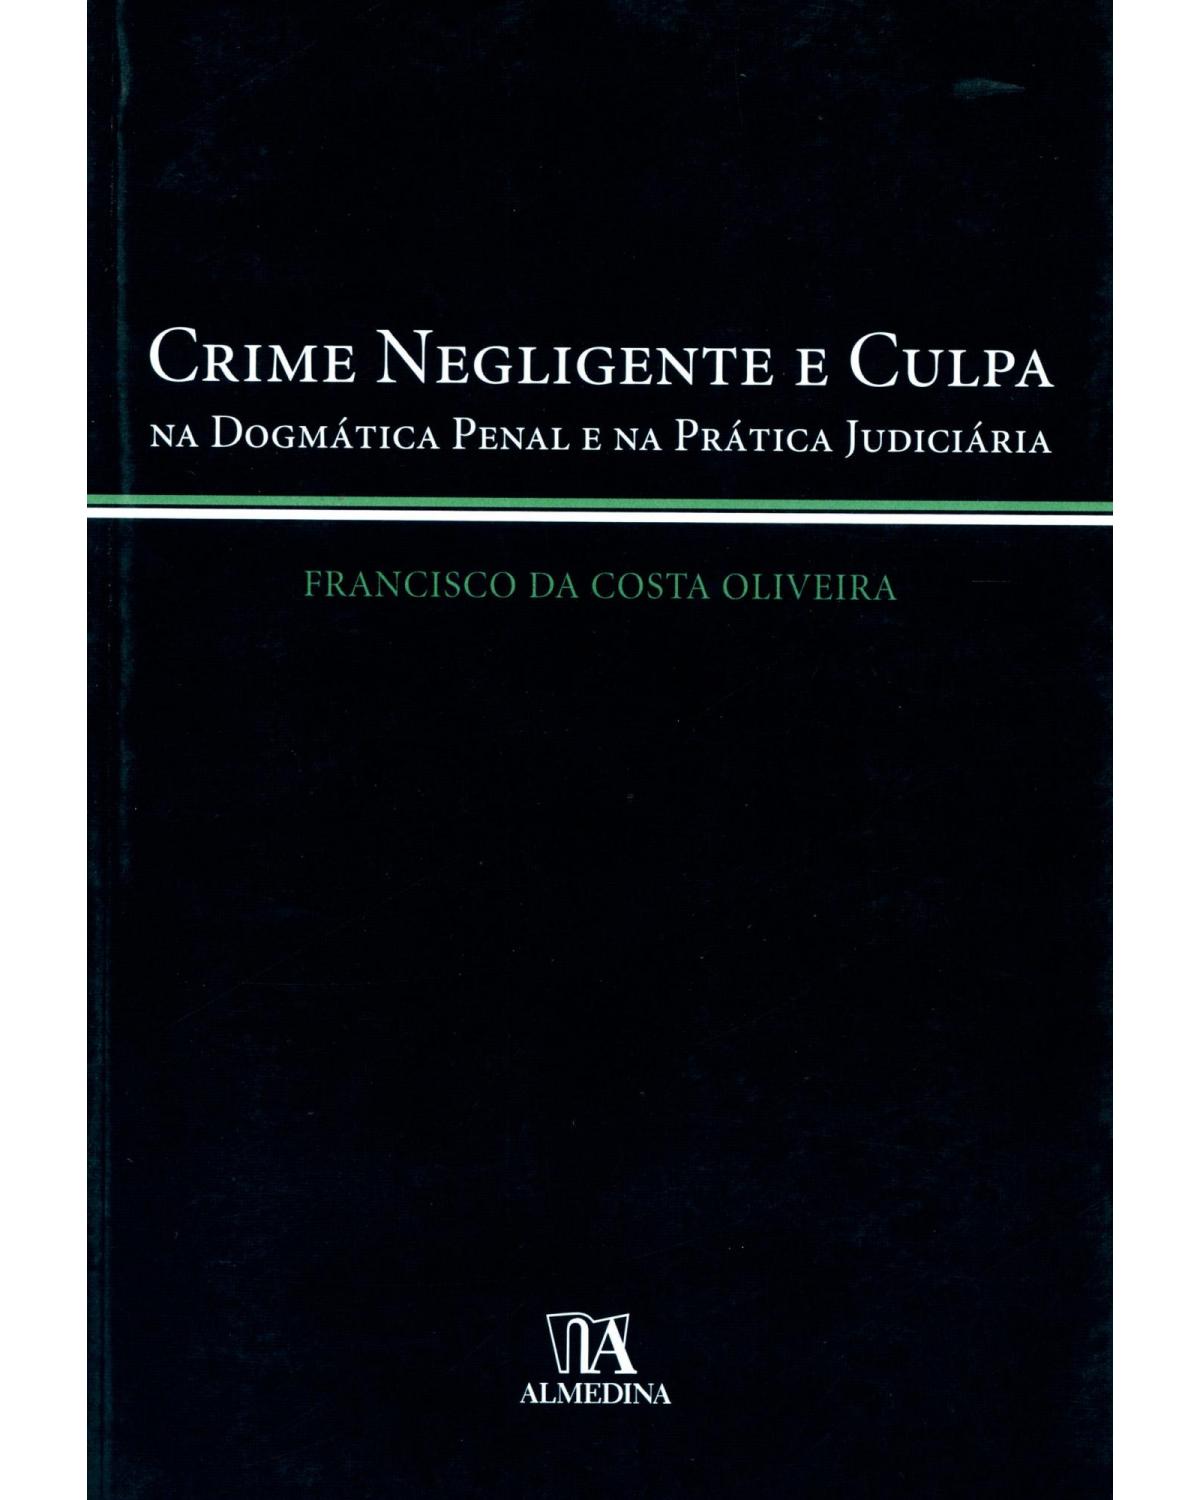 Crime negligente e culpa - na dogmática penal e na prática judiciária - 1ª Edição | 2010